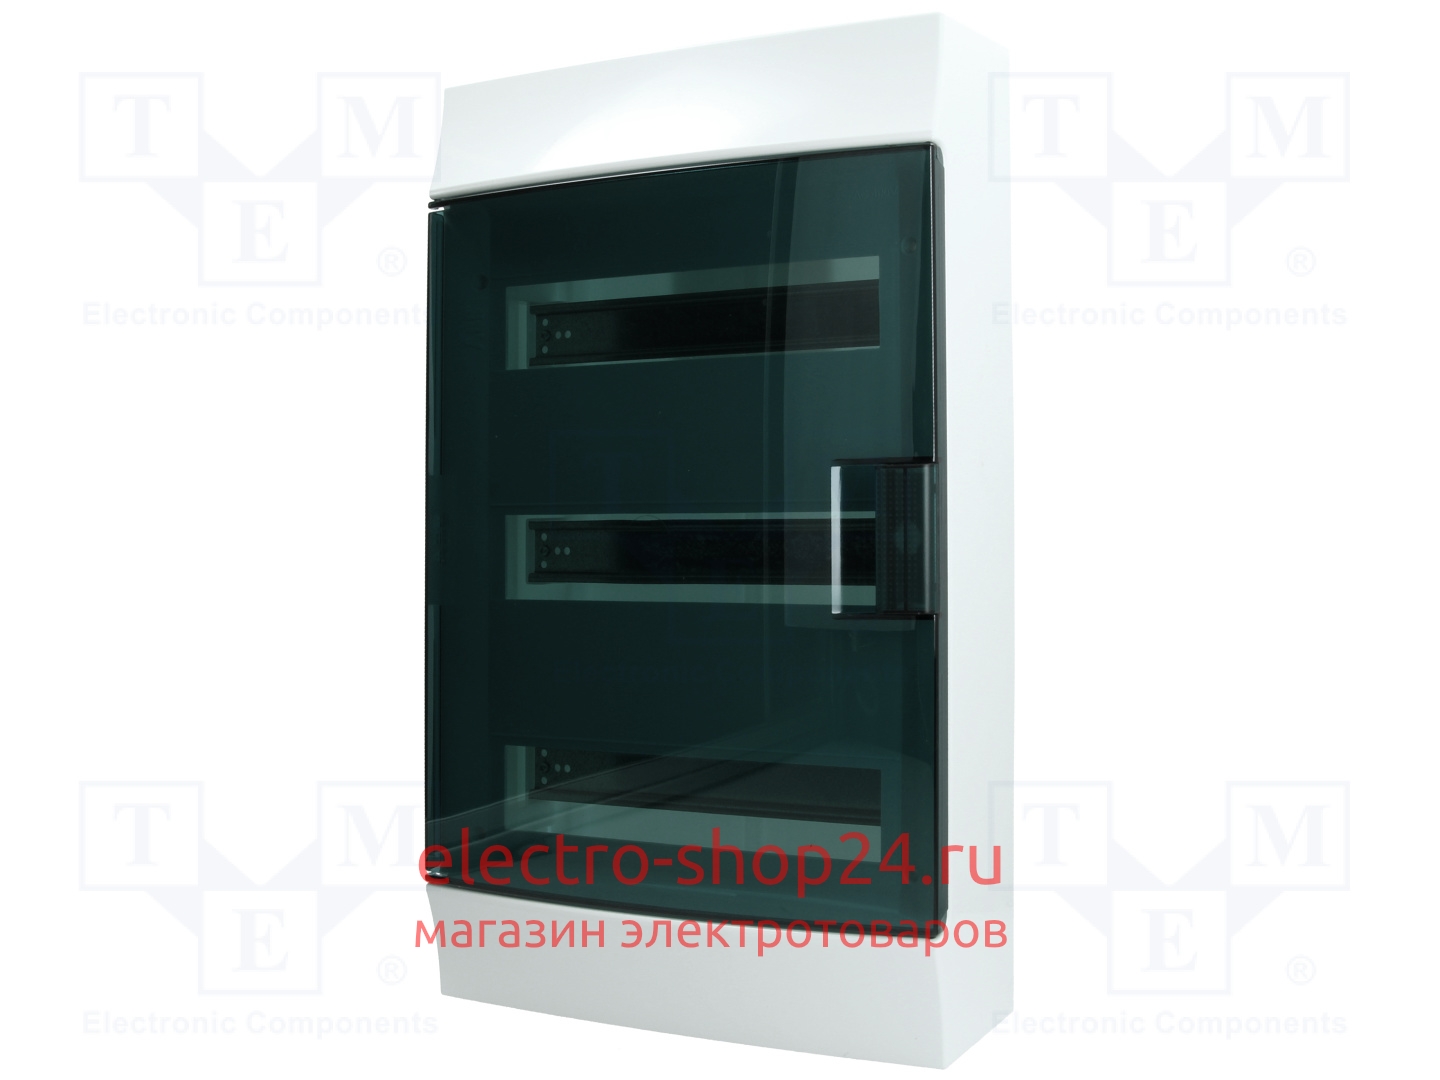 Бокс настенный ABB Mistral41 36М модулей (3x12) прозрачная дверь с клеммным блоком 1SPE007717F9994 - магазин электротехники Electroshop